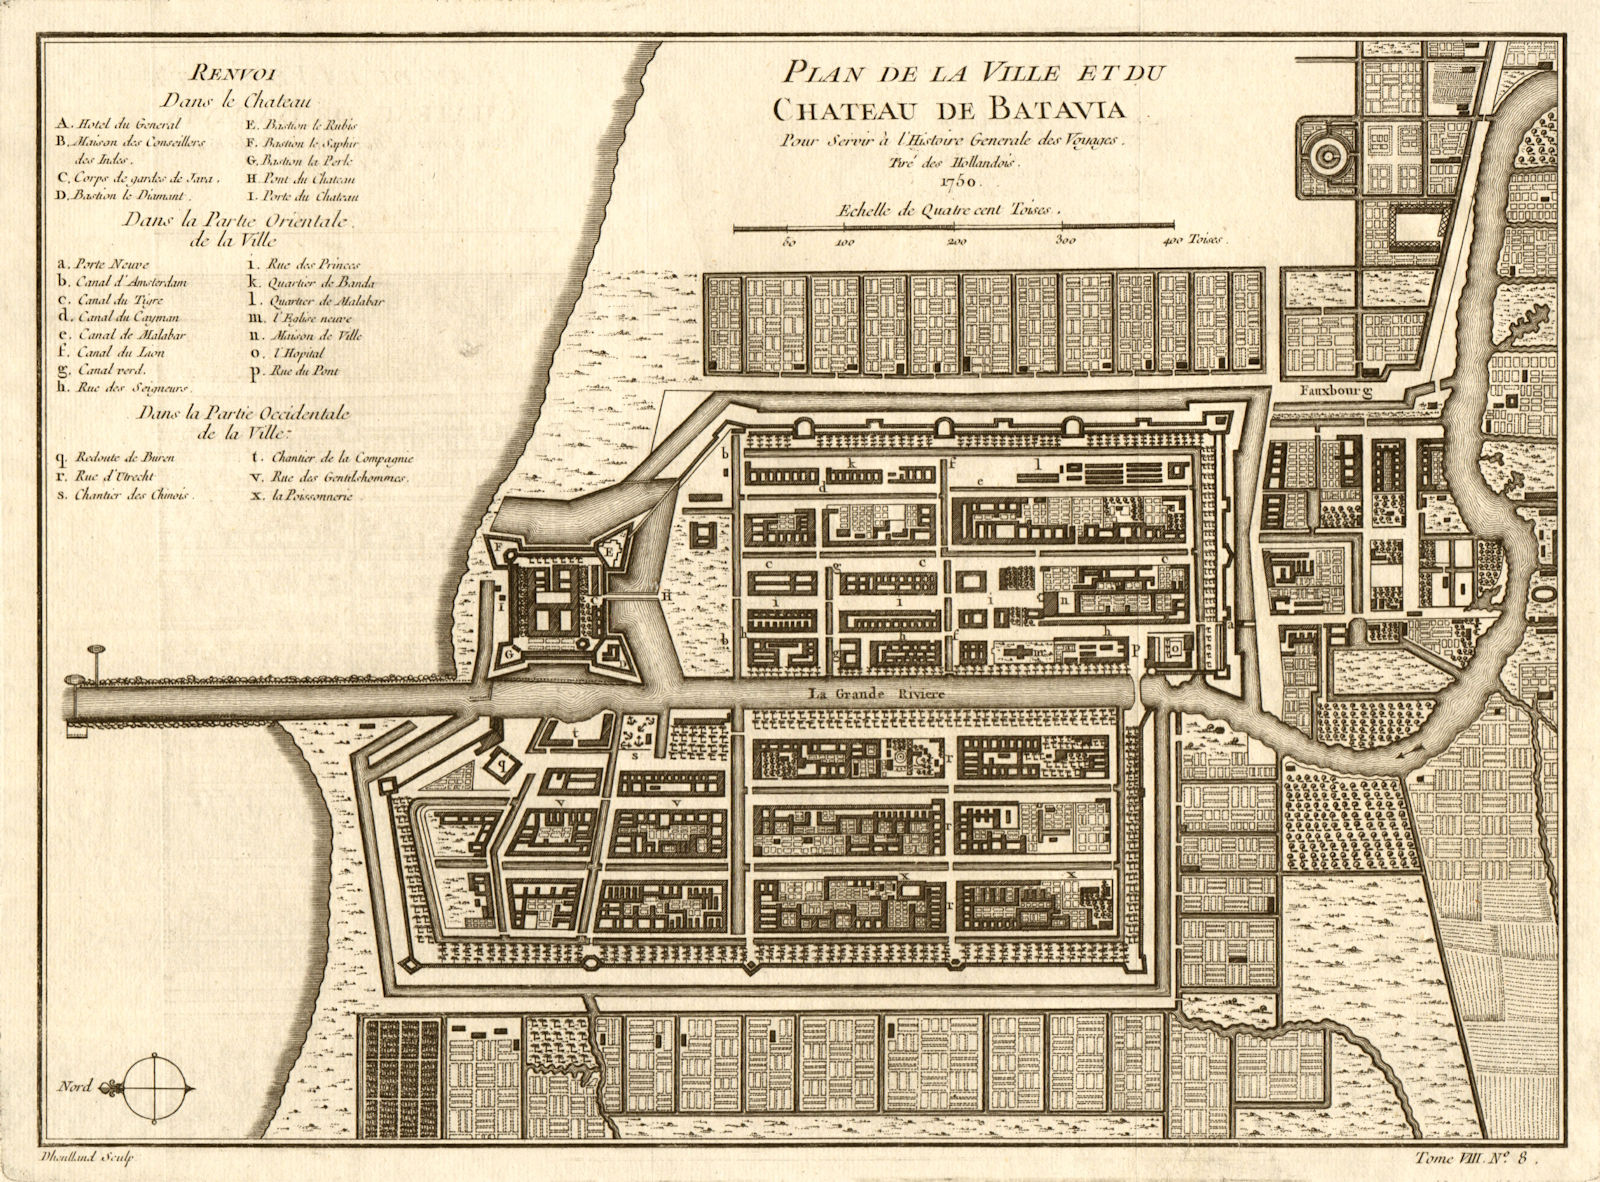 'Plan de la Ville et du Chateau de Batavia', now Jakarta. BELLIN 1750 old map